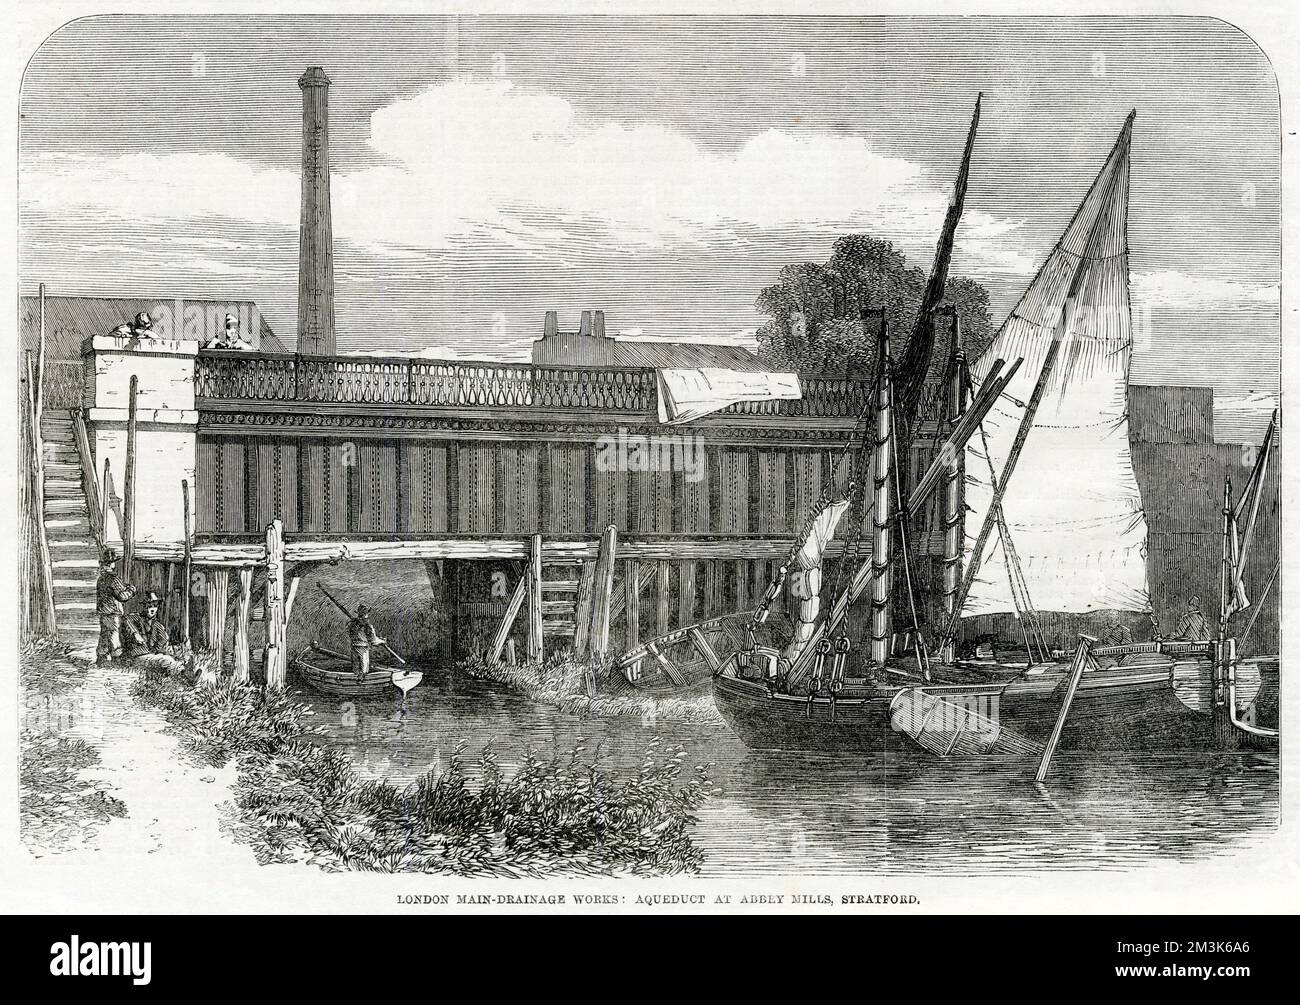 Aquädukt, das die Hauptentwässerungswerke über dem Fluss Lea in Abbey Mills, Stratford, London, trug. Im Vordergrund nähert sich ein Segelschiff dem Aquädukt. 1864 Stockfoto